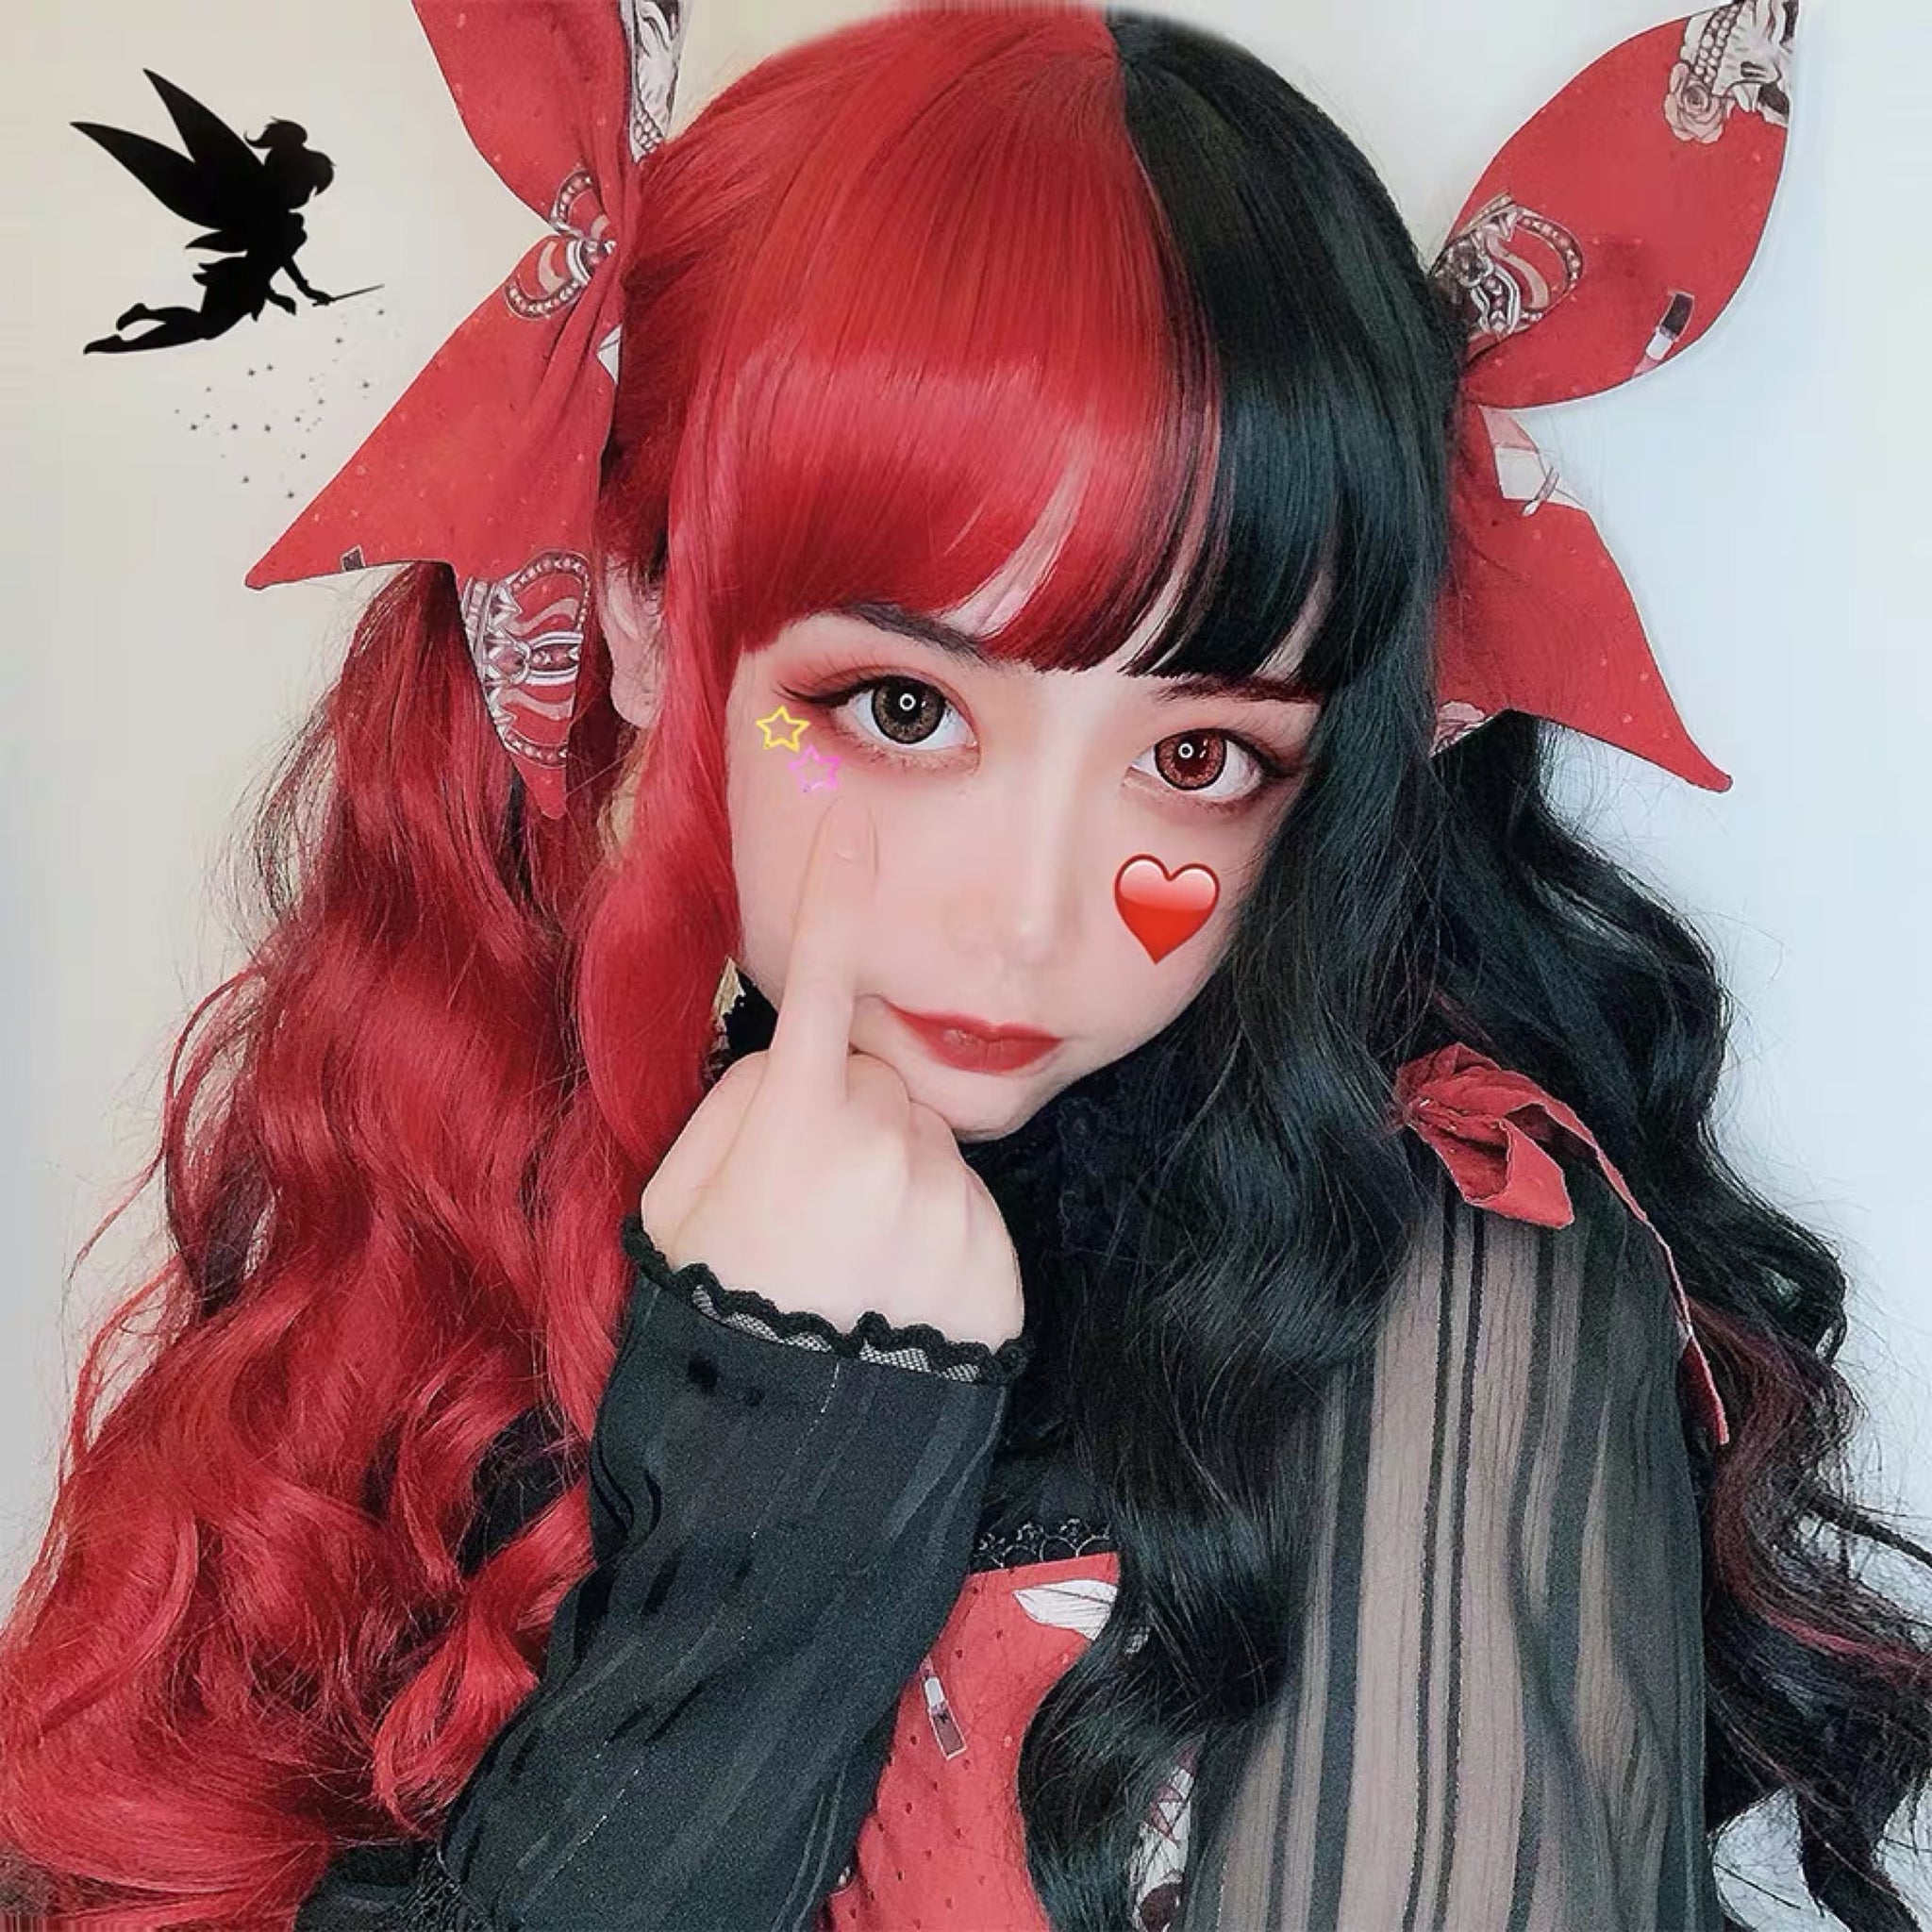 Cute Lolita Wig